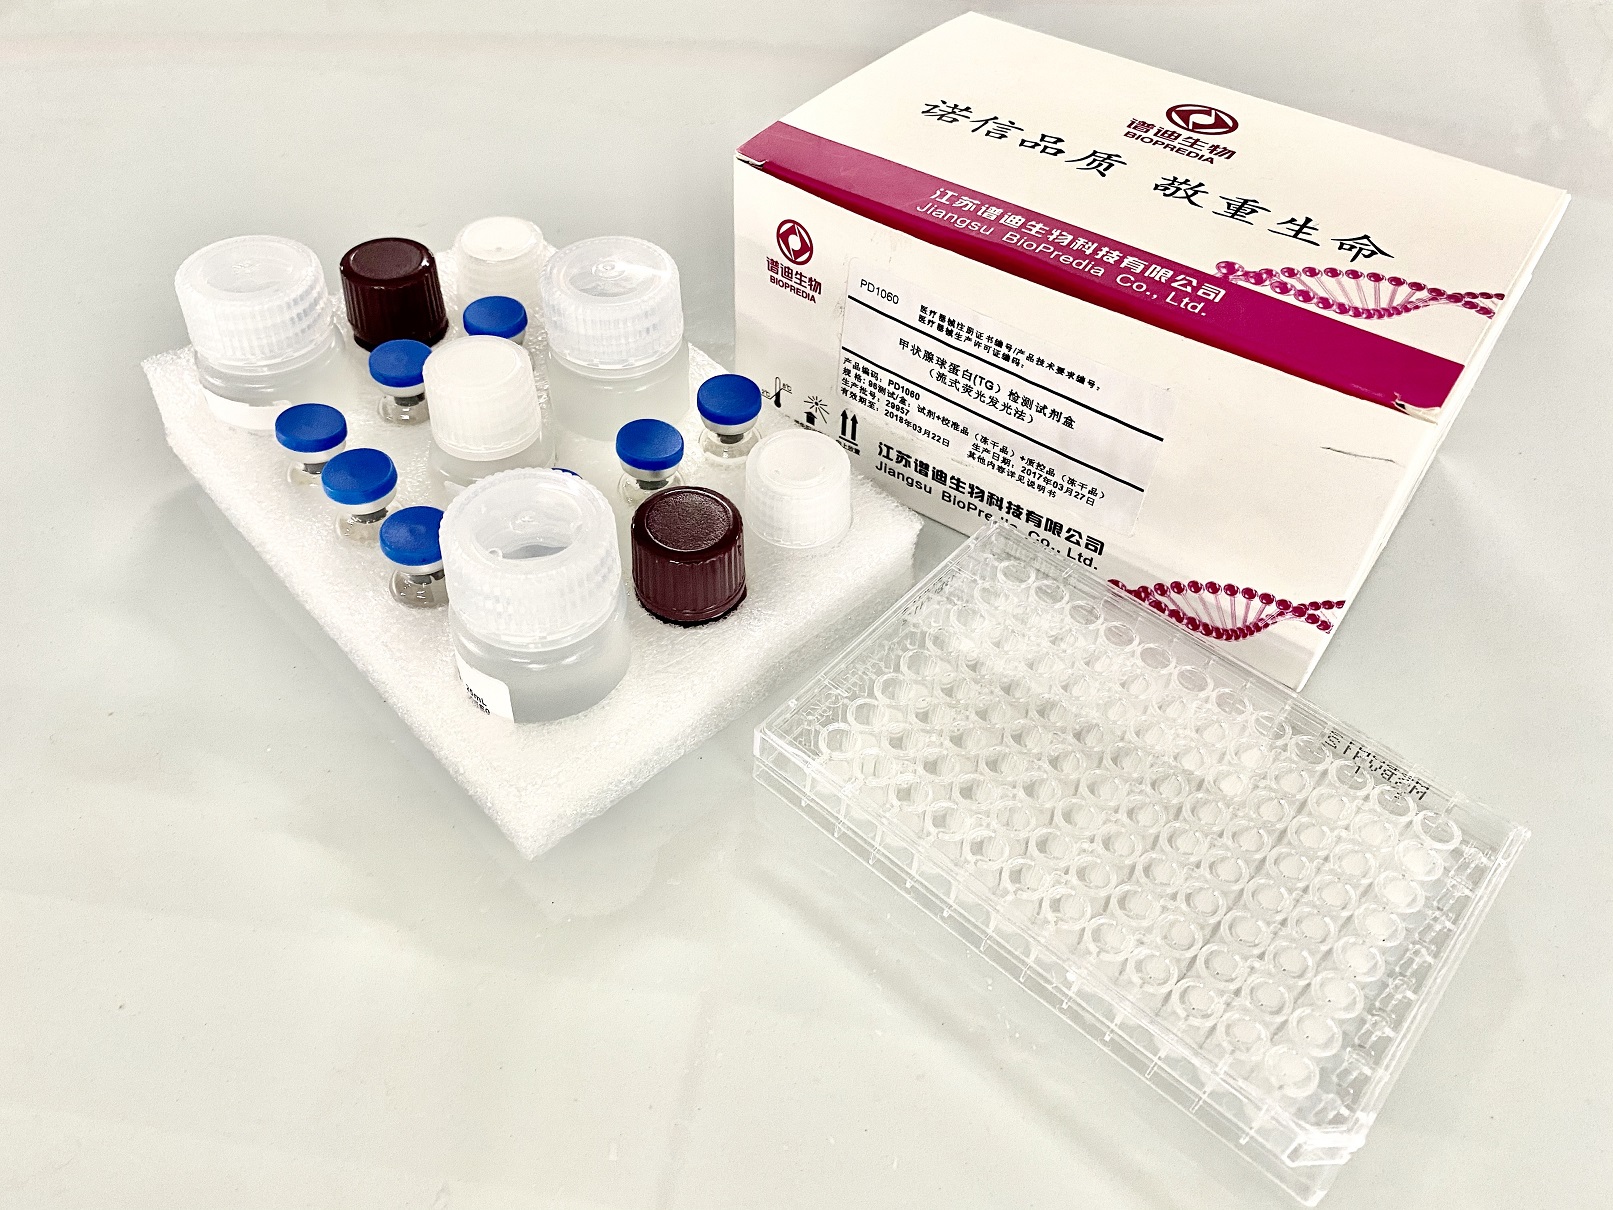 【BIOPREDIA】甲状腺球蛋白检测试剂盒（流式荧光发光法）